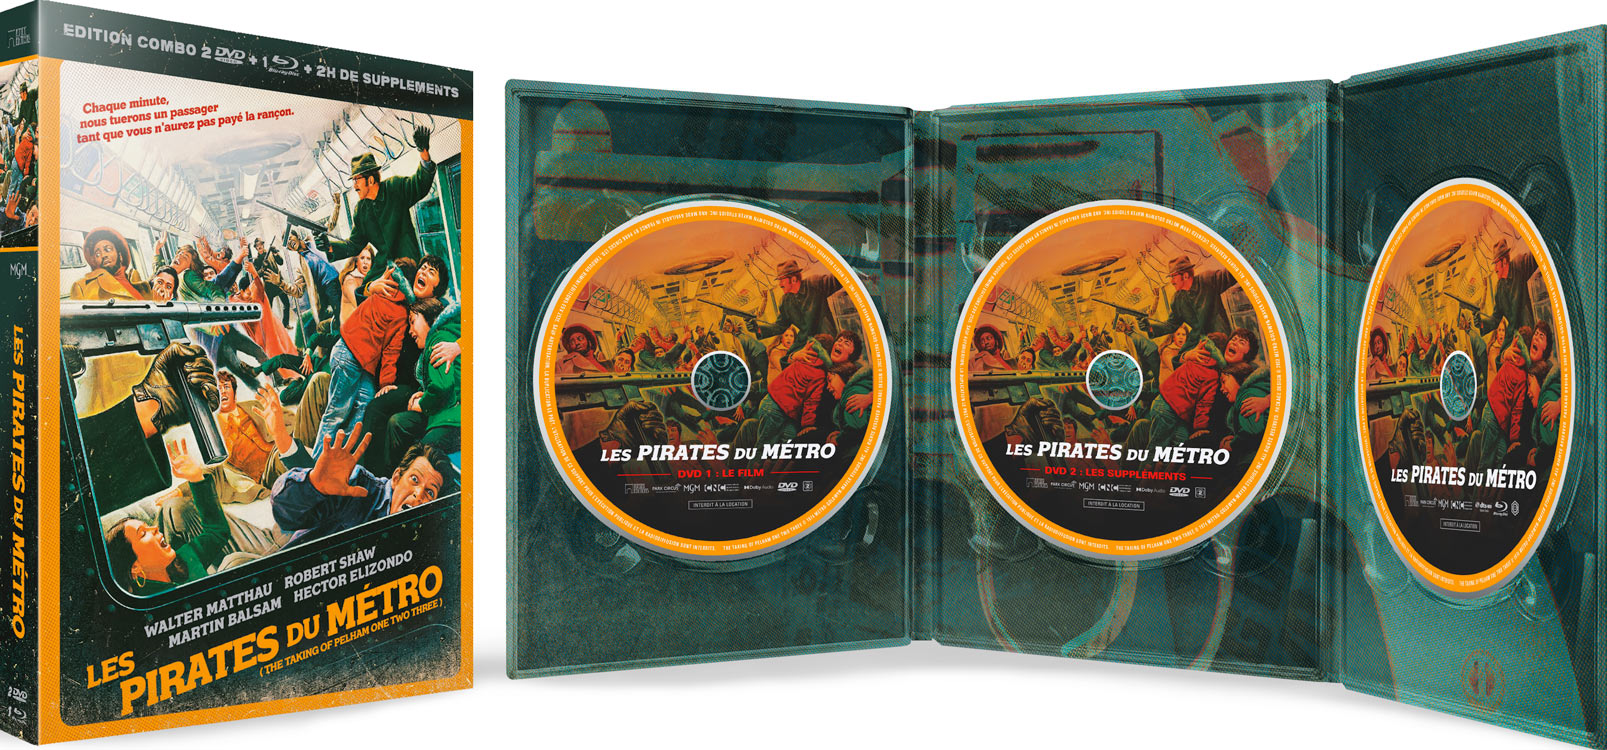 Les Pirates du métro (1974) - Combo Blu-ray + DVD + DVD de bonus